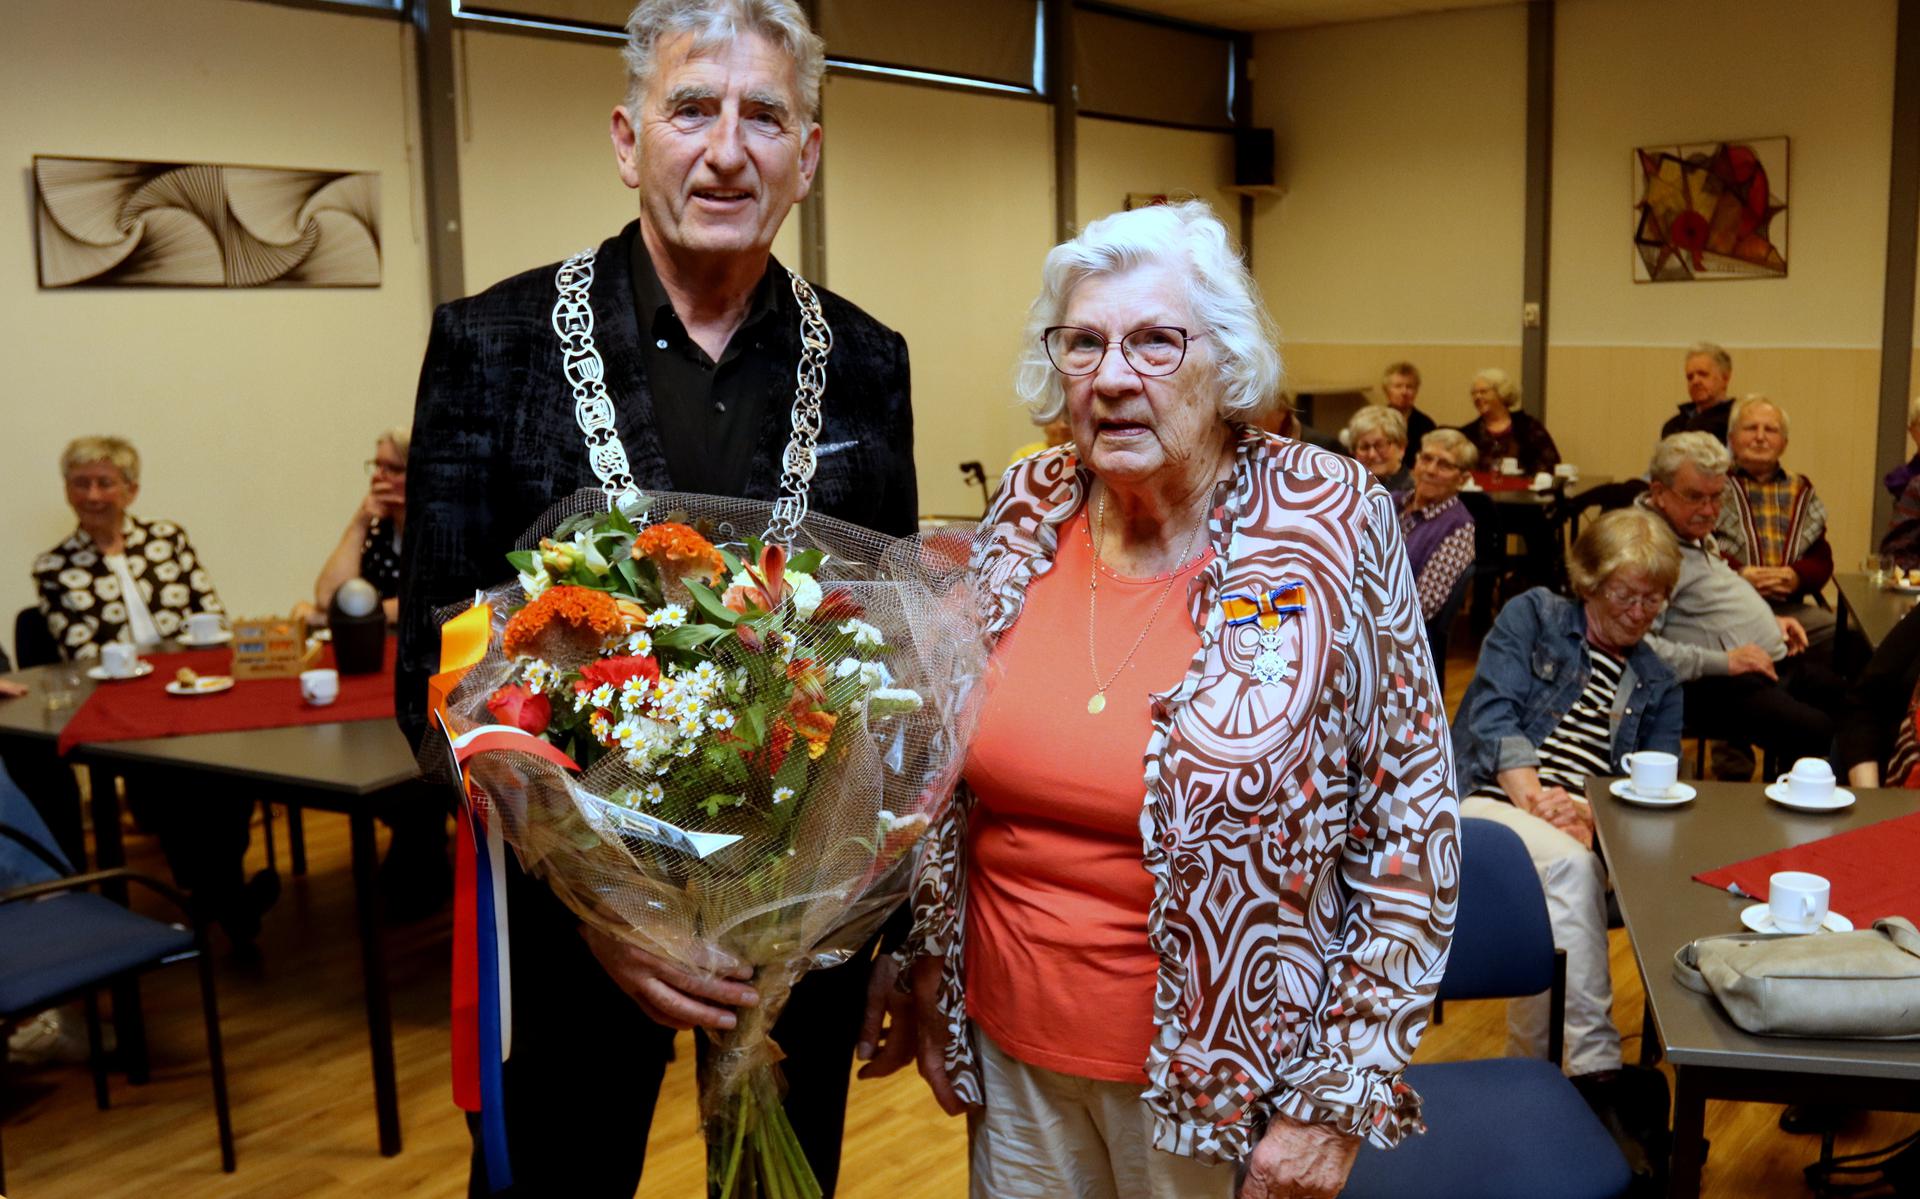 Els Smid-Mulder (80) uit Emmen is maandag koninklijk onderscheiden. Ze is benoemd tot Lid in de Orde van Oranje Nassau.